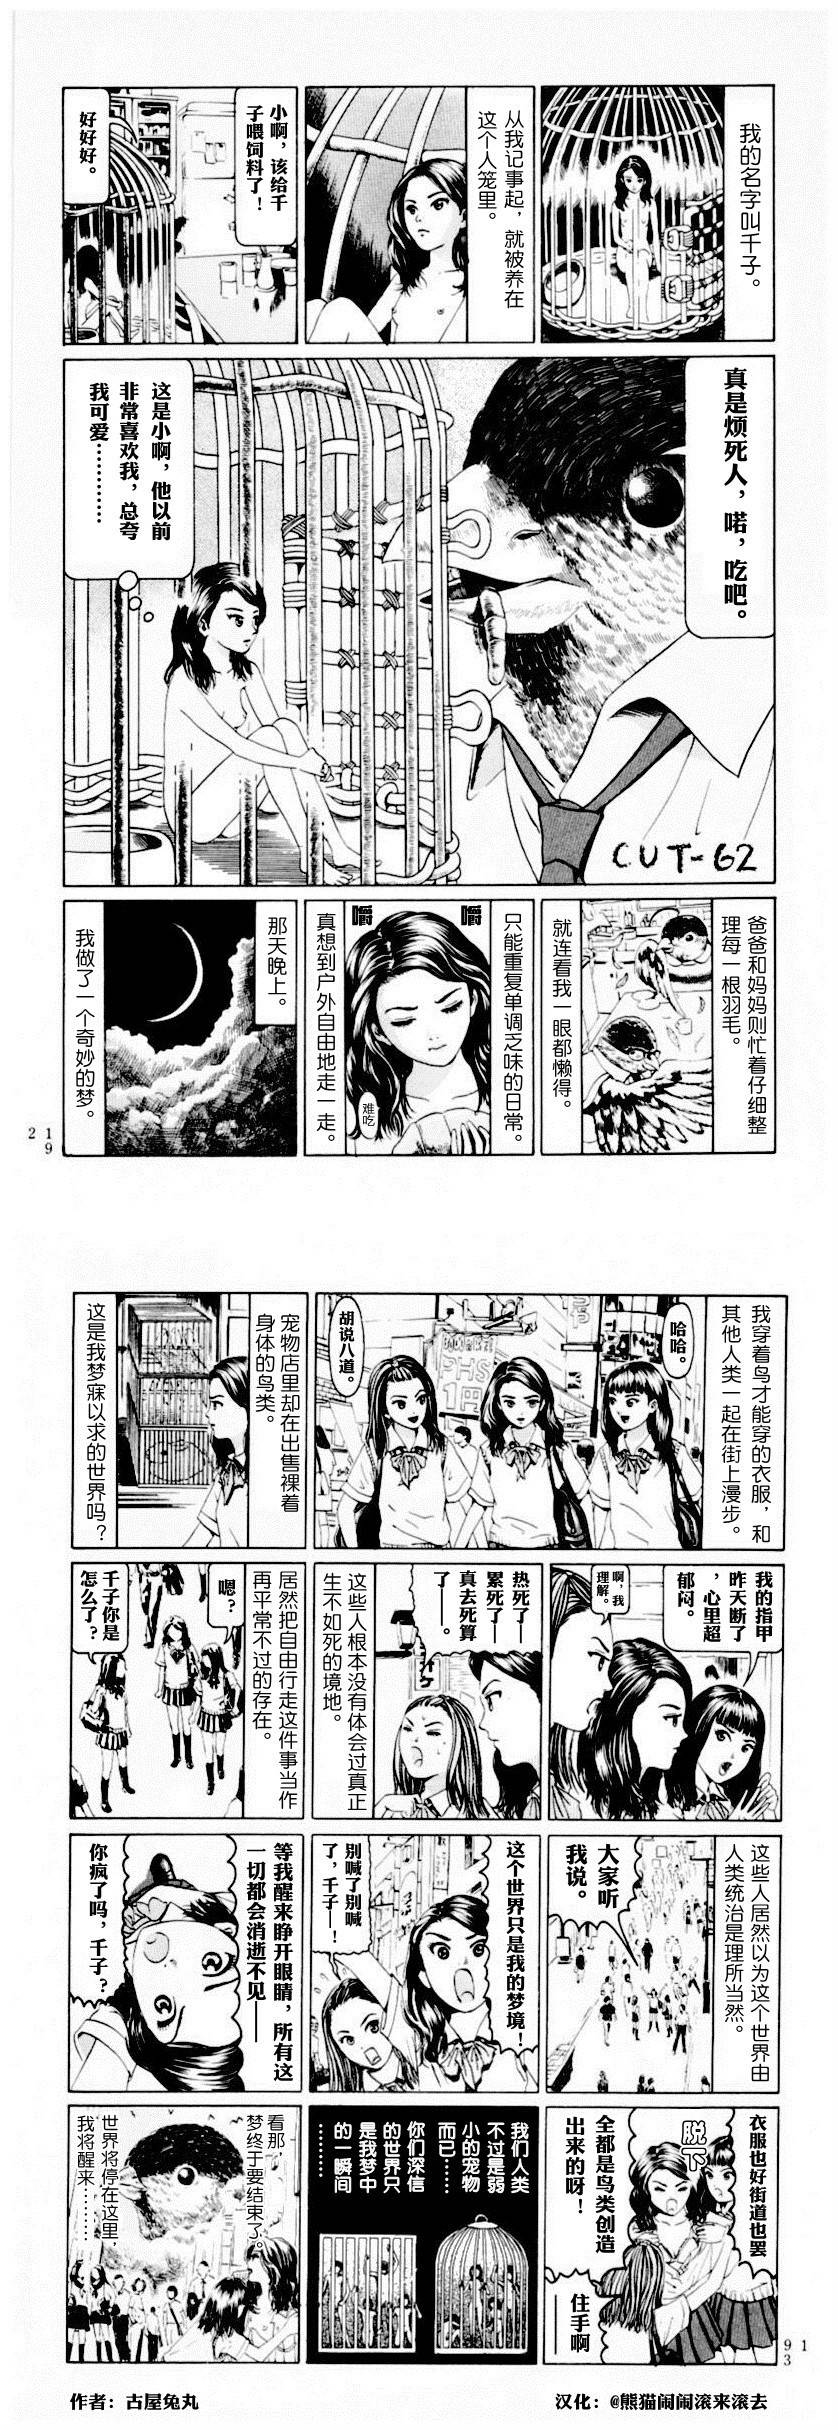 邪恶漫画爆笑囧图第353刊：童话的长大